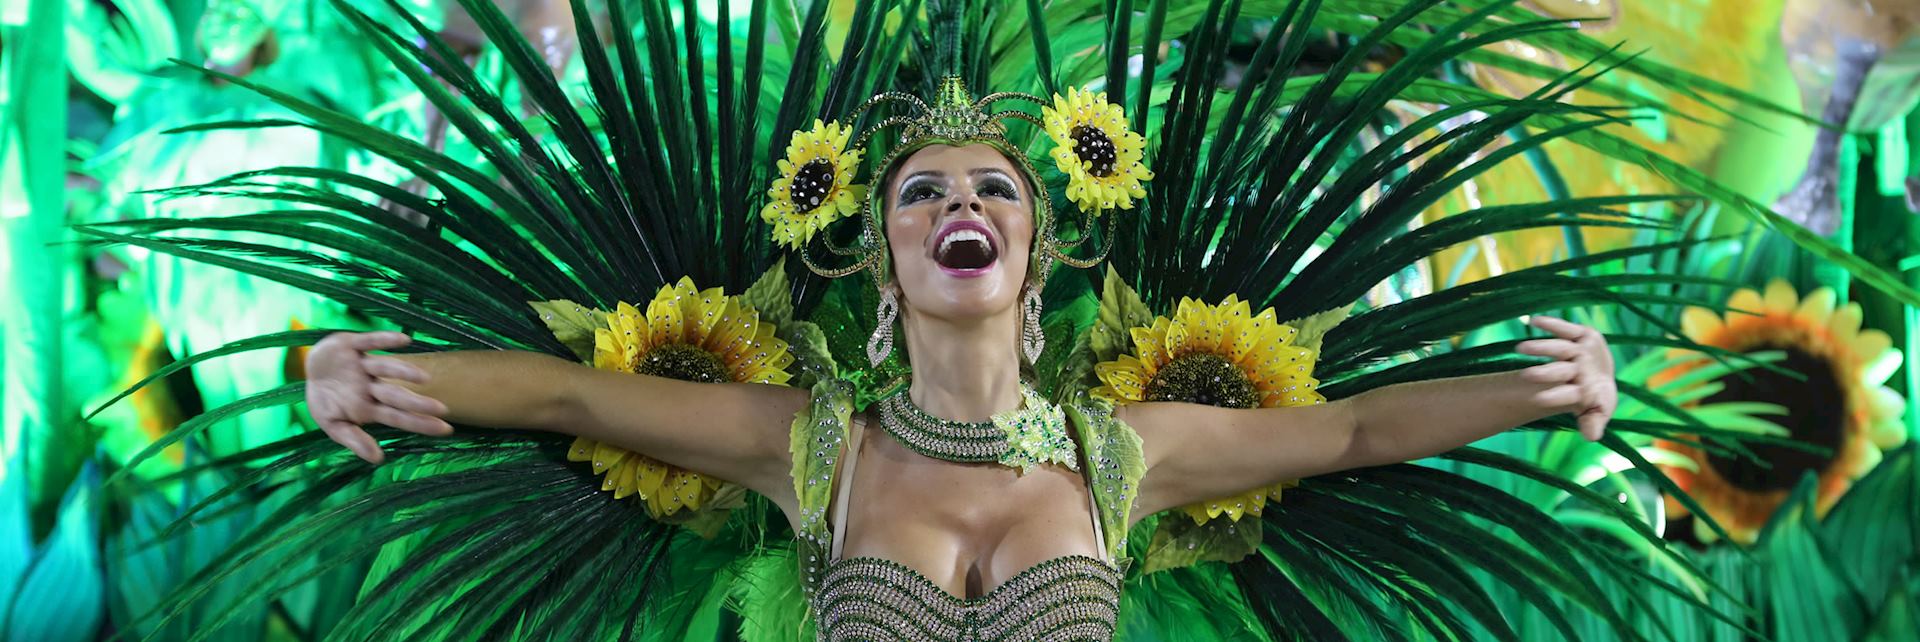 The Rio Carnival